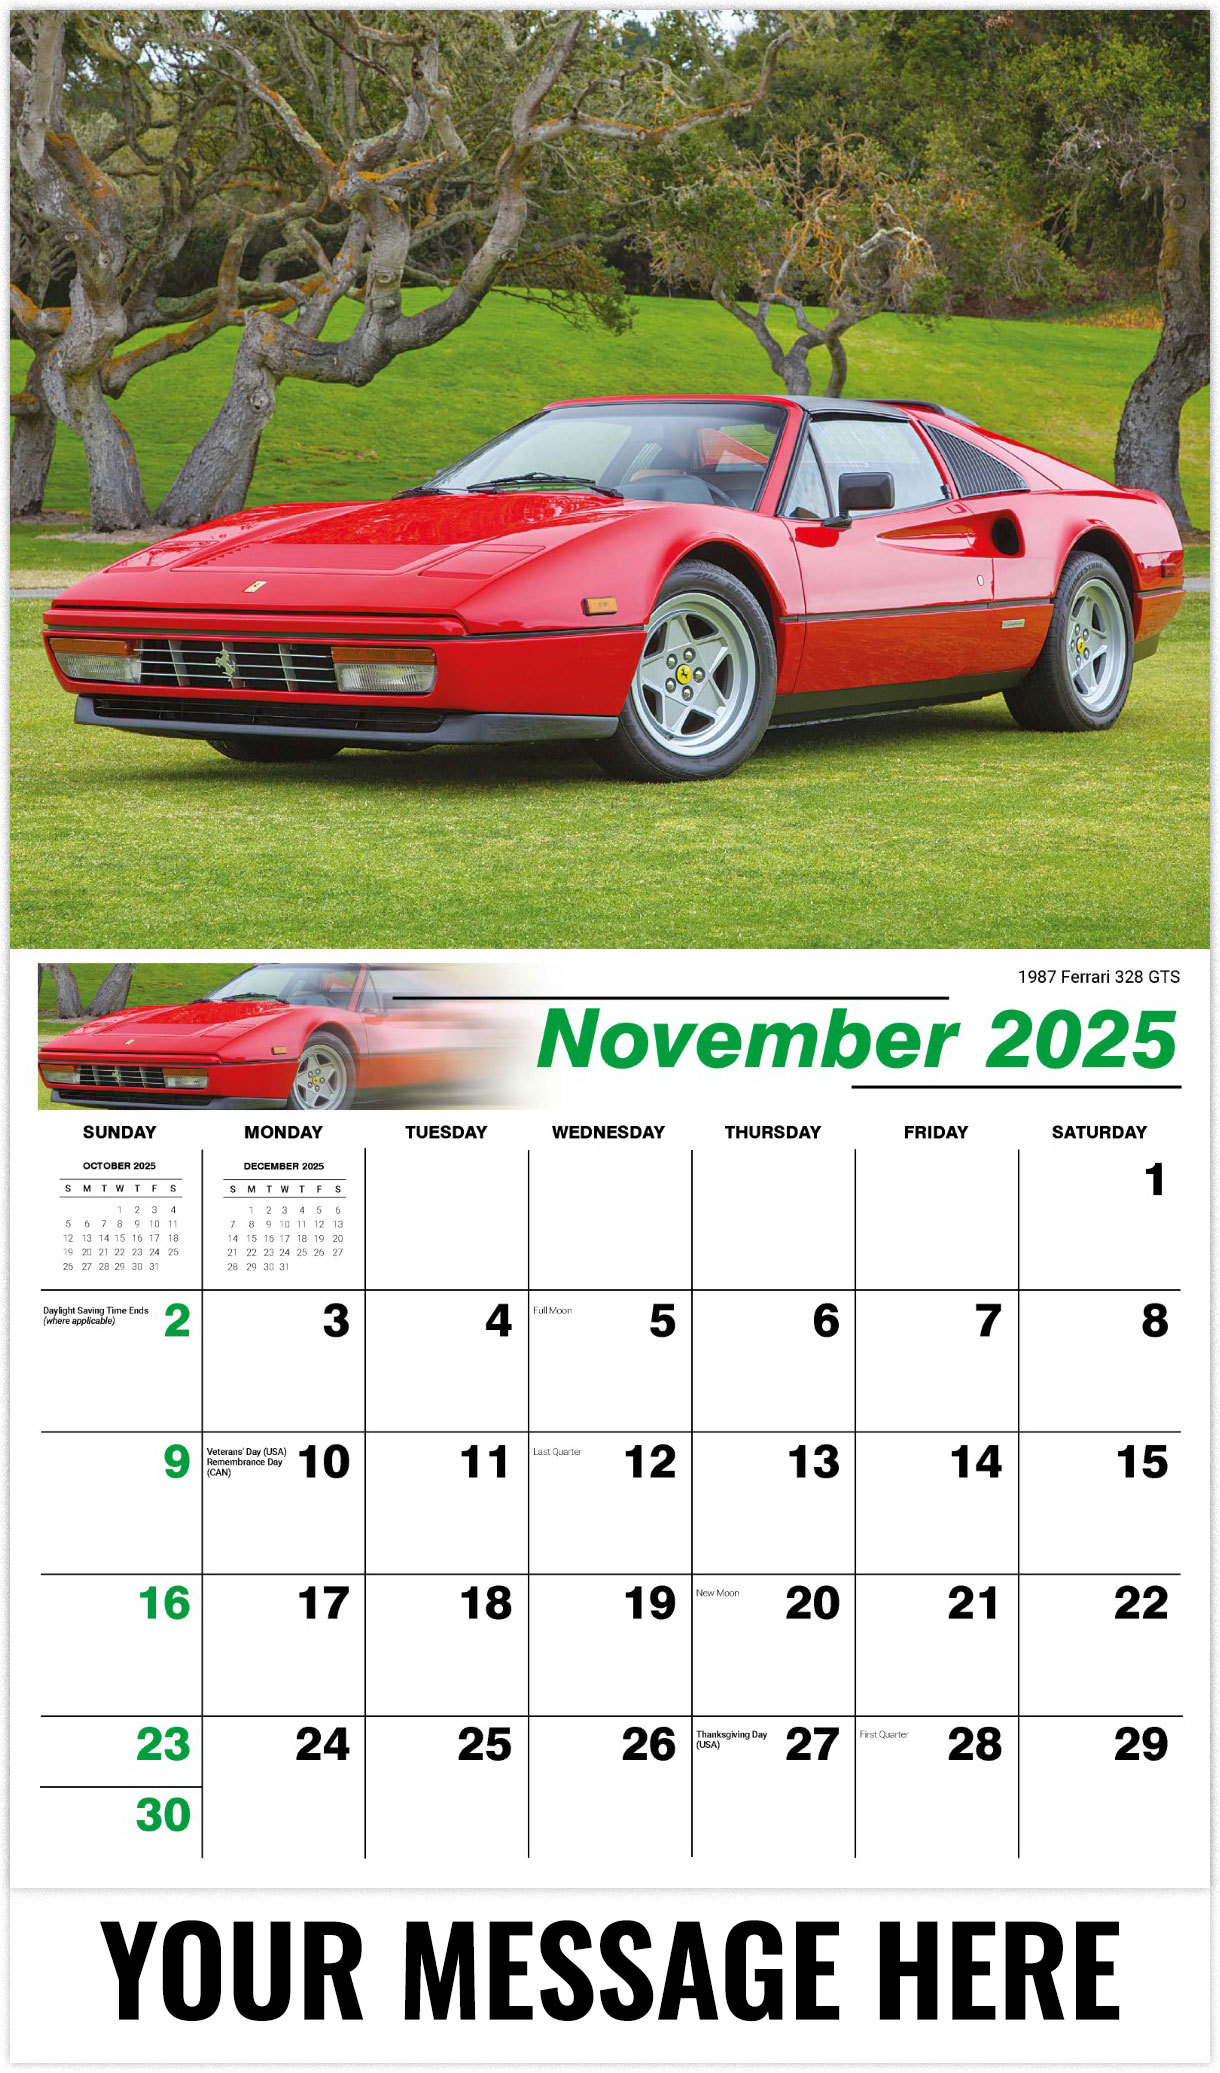 Galleria Classic Car - 2025